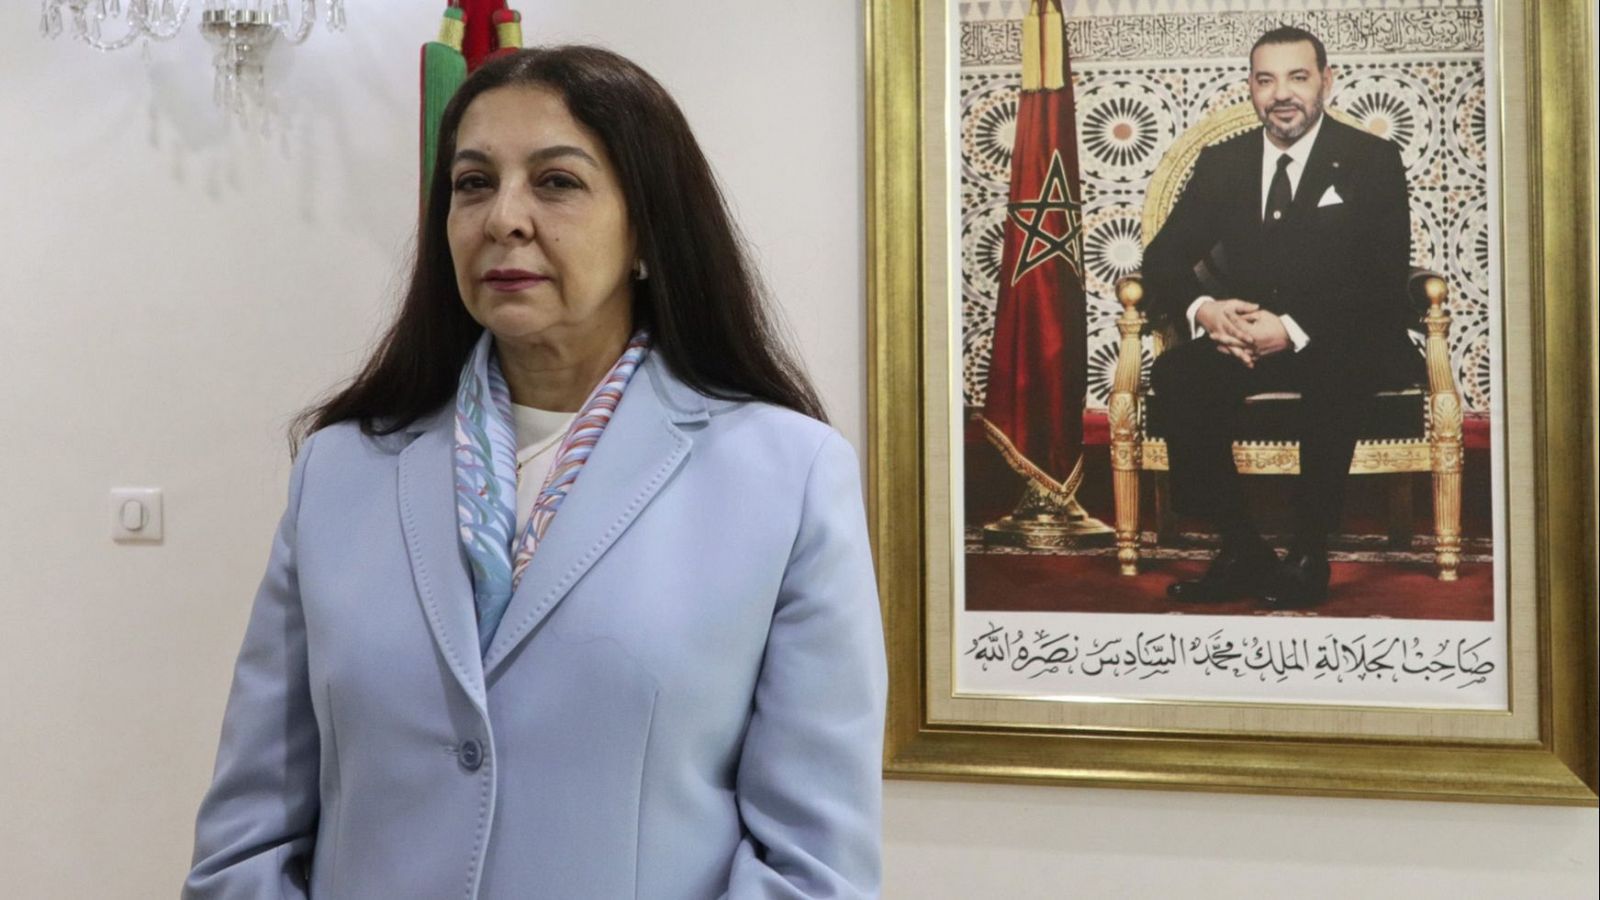 Benyaich confirma las "relaciones excepcionales" entre Marruecos y España